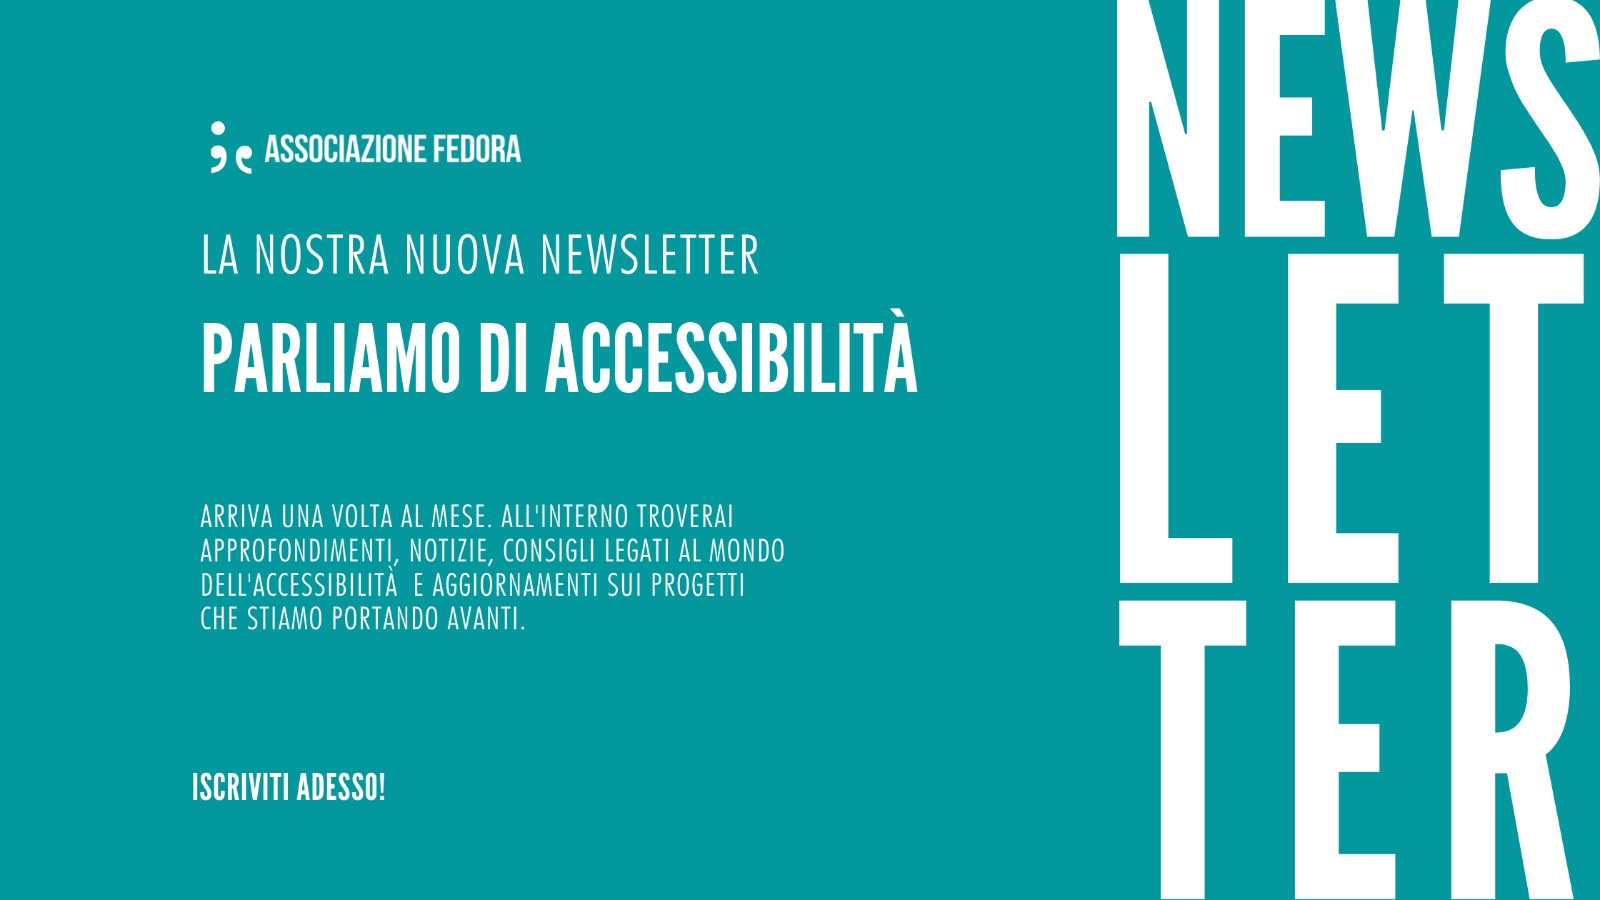 Parliamo di accessibilità: la nostra nuova newsletter